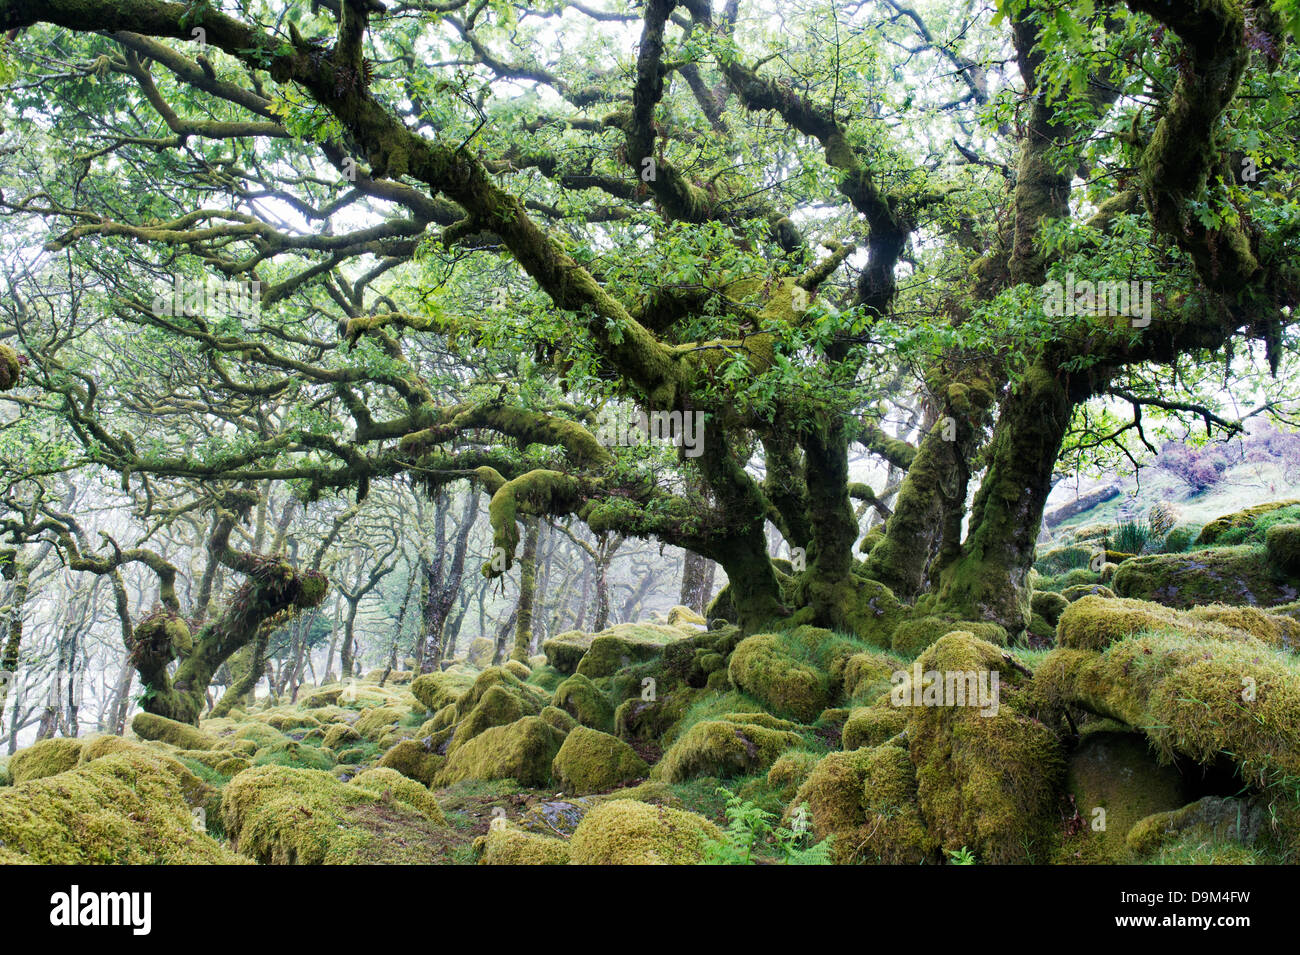 Wistmans Wood. Dartmoor, Devon, England Stock Photo